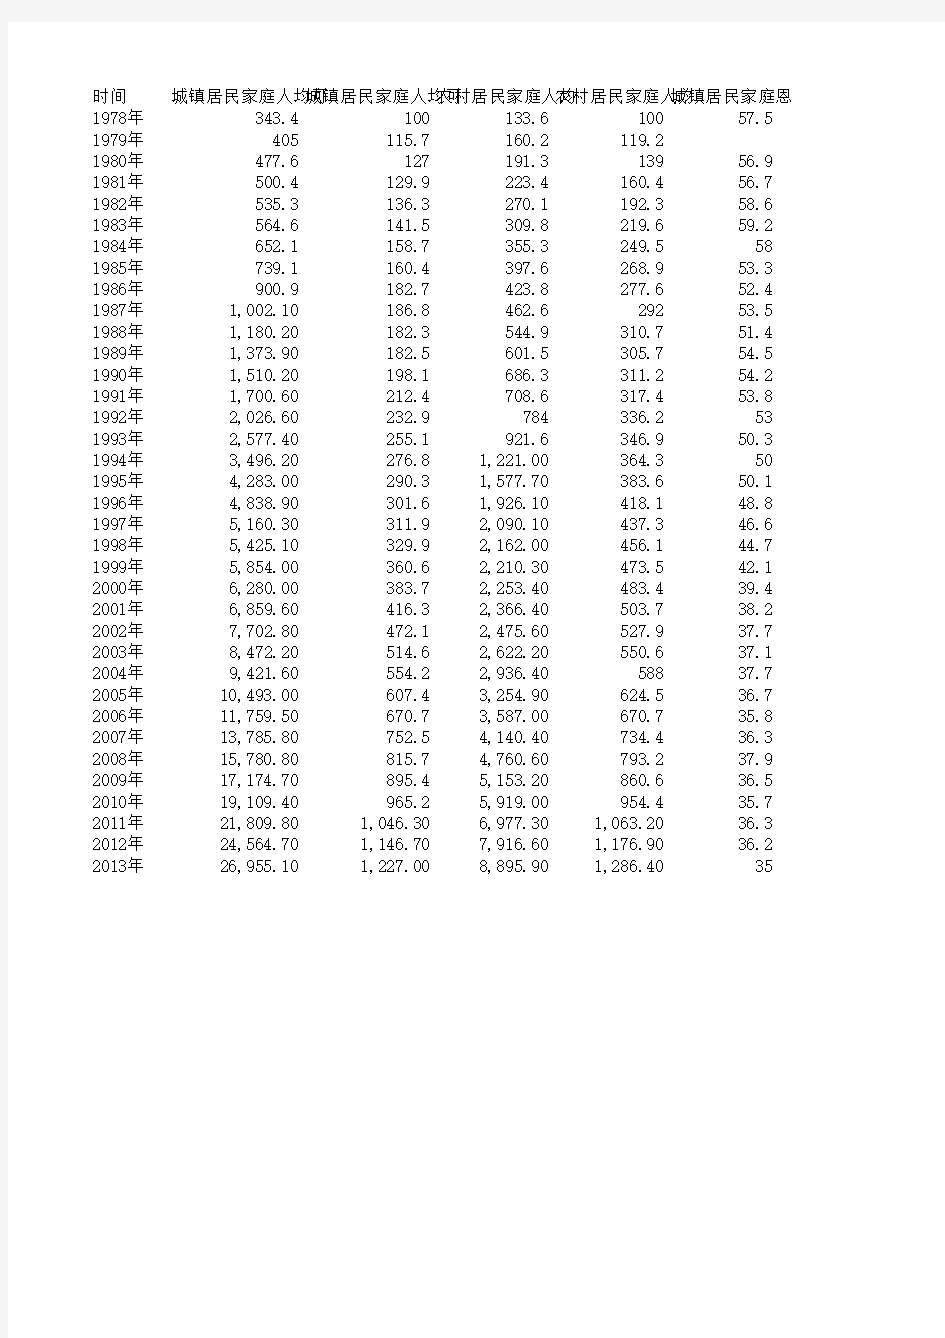 1978-2013年城乡居民人均收入和恩格尔系数统计